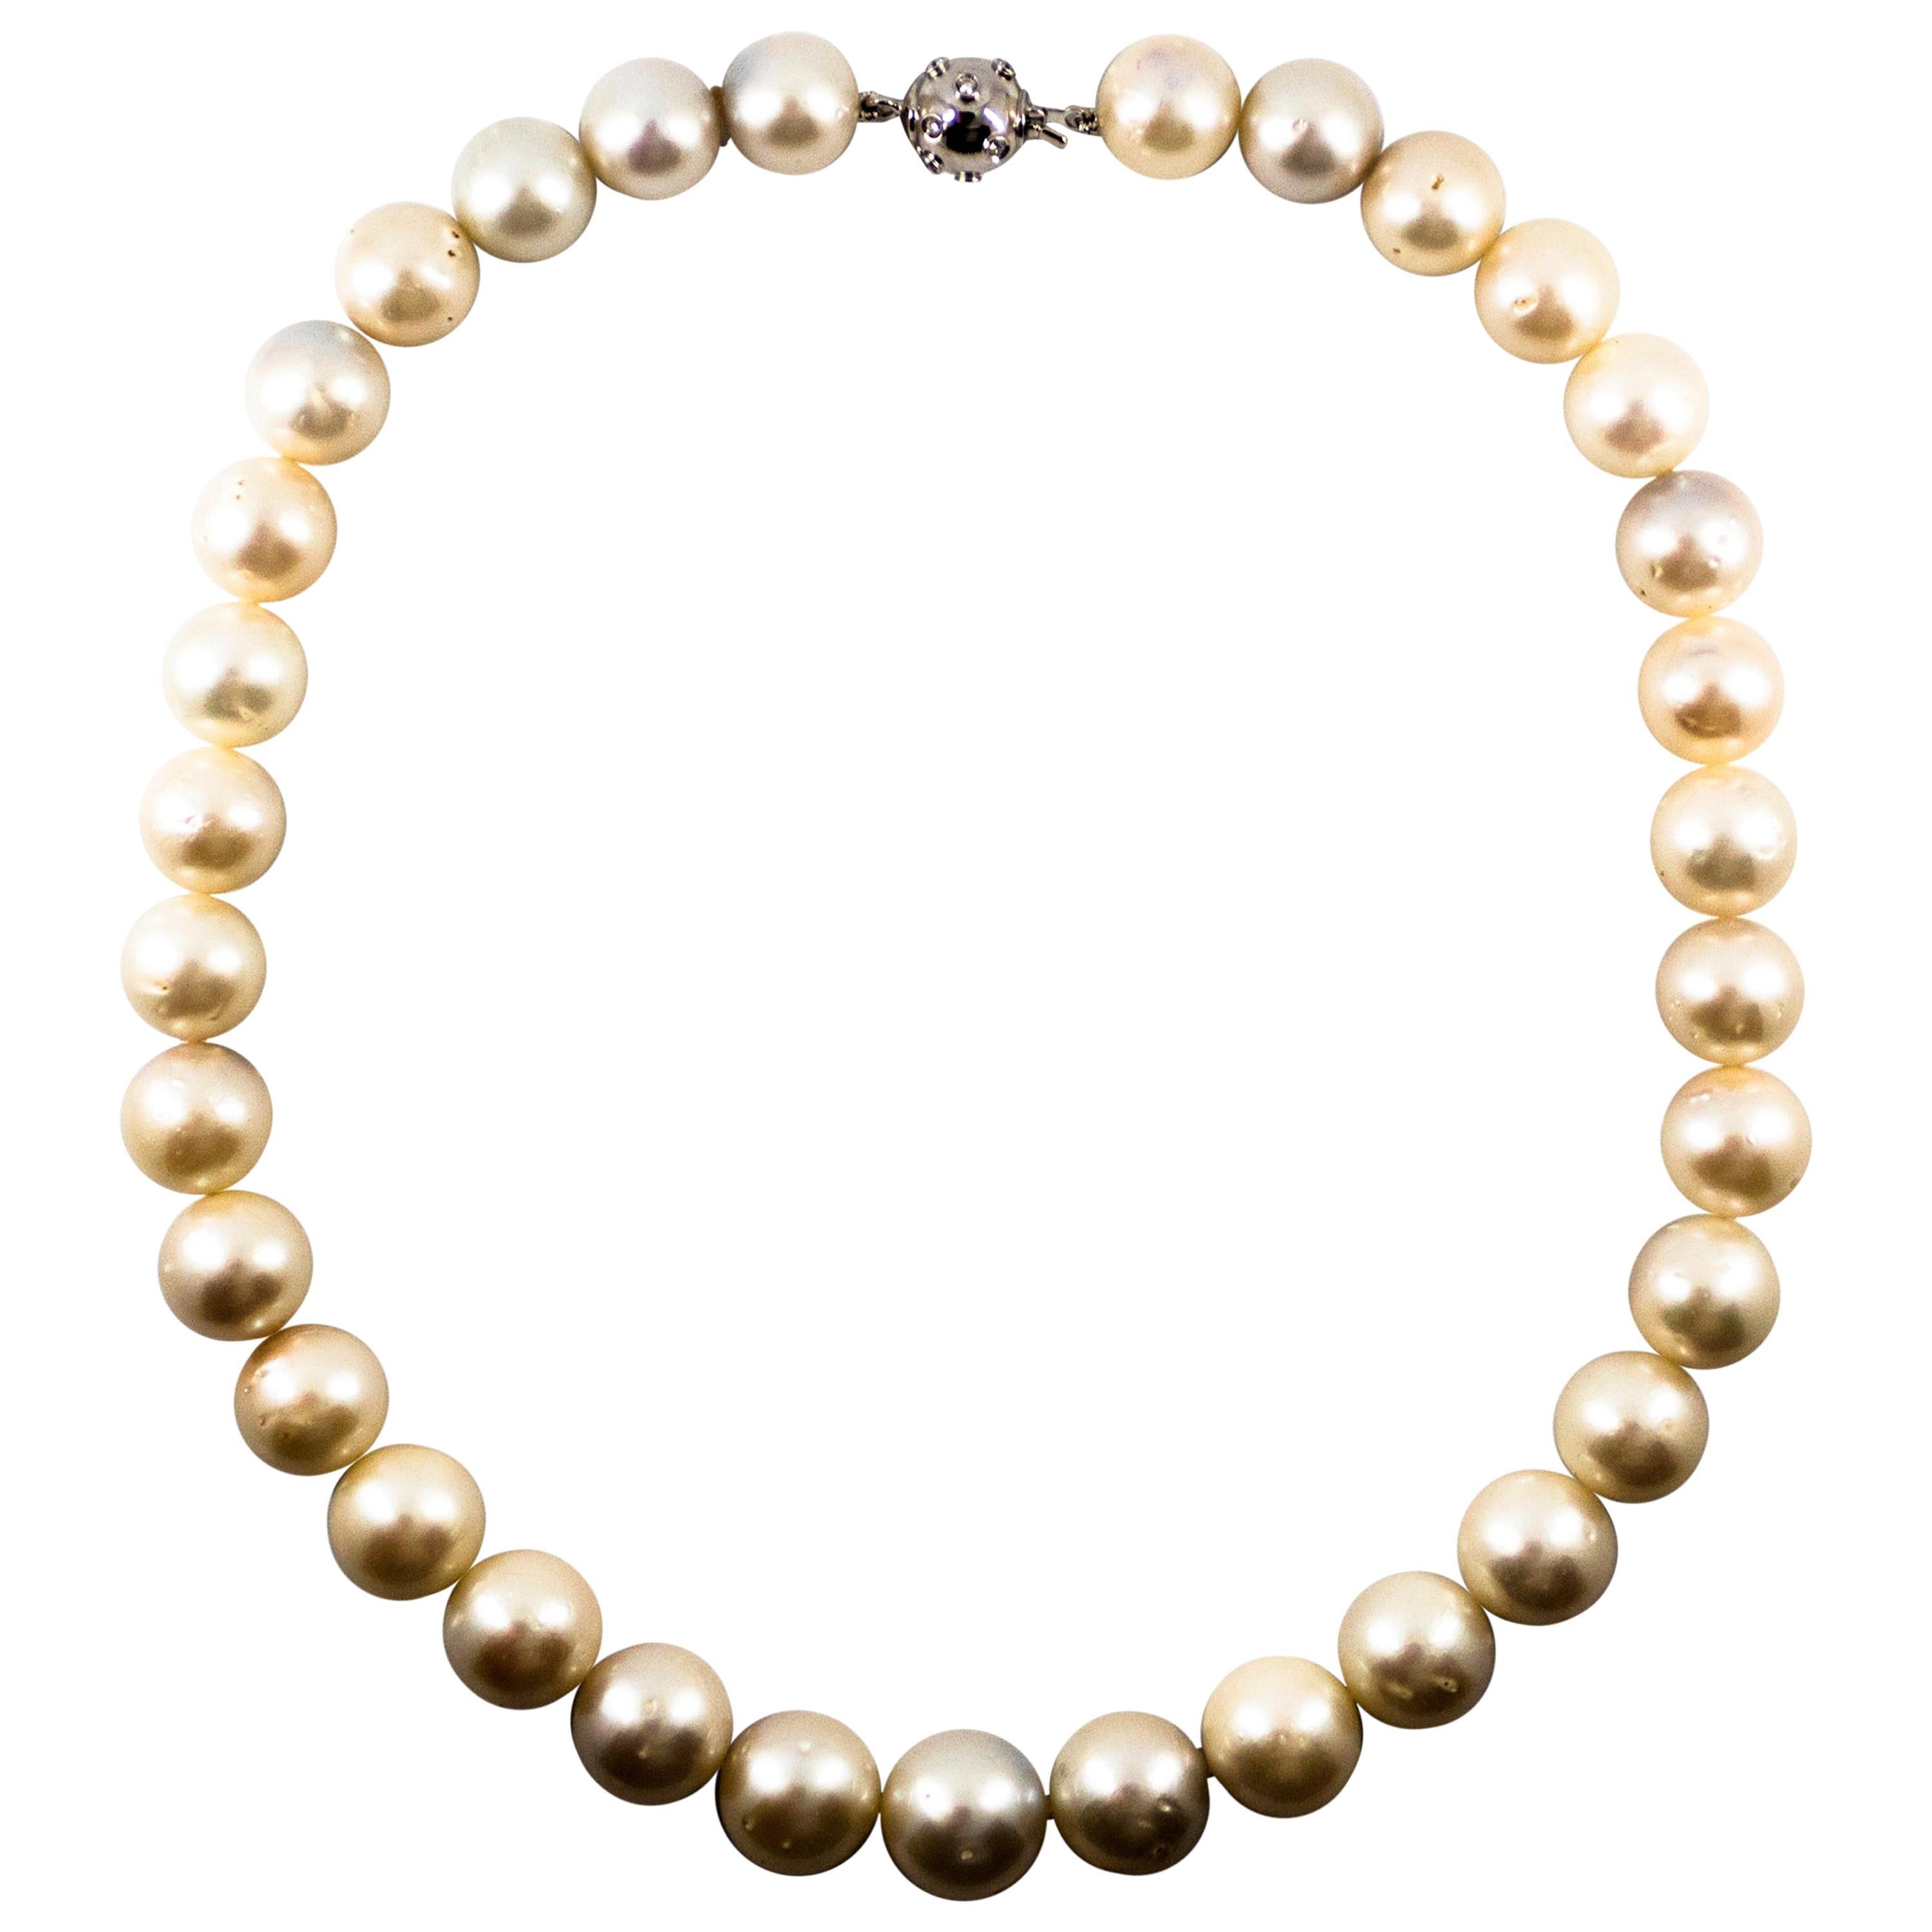 Perlenhalskette aus Weißgold mit 0,28 Karat weißem Diamant 510.0 Karat australischer Perle und Weißgold